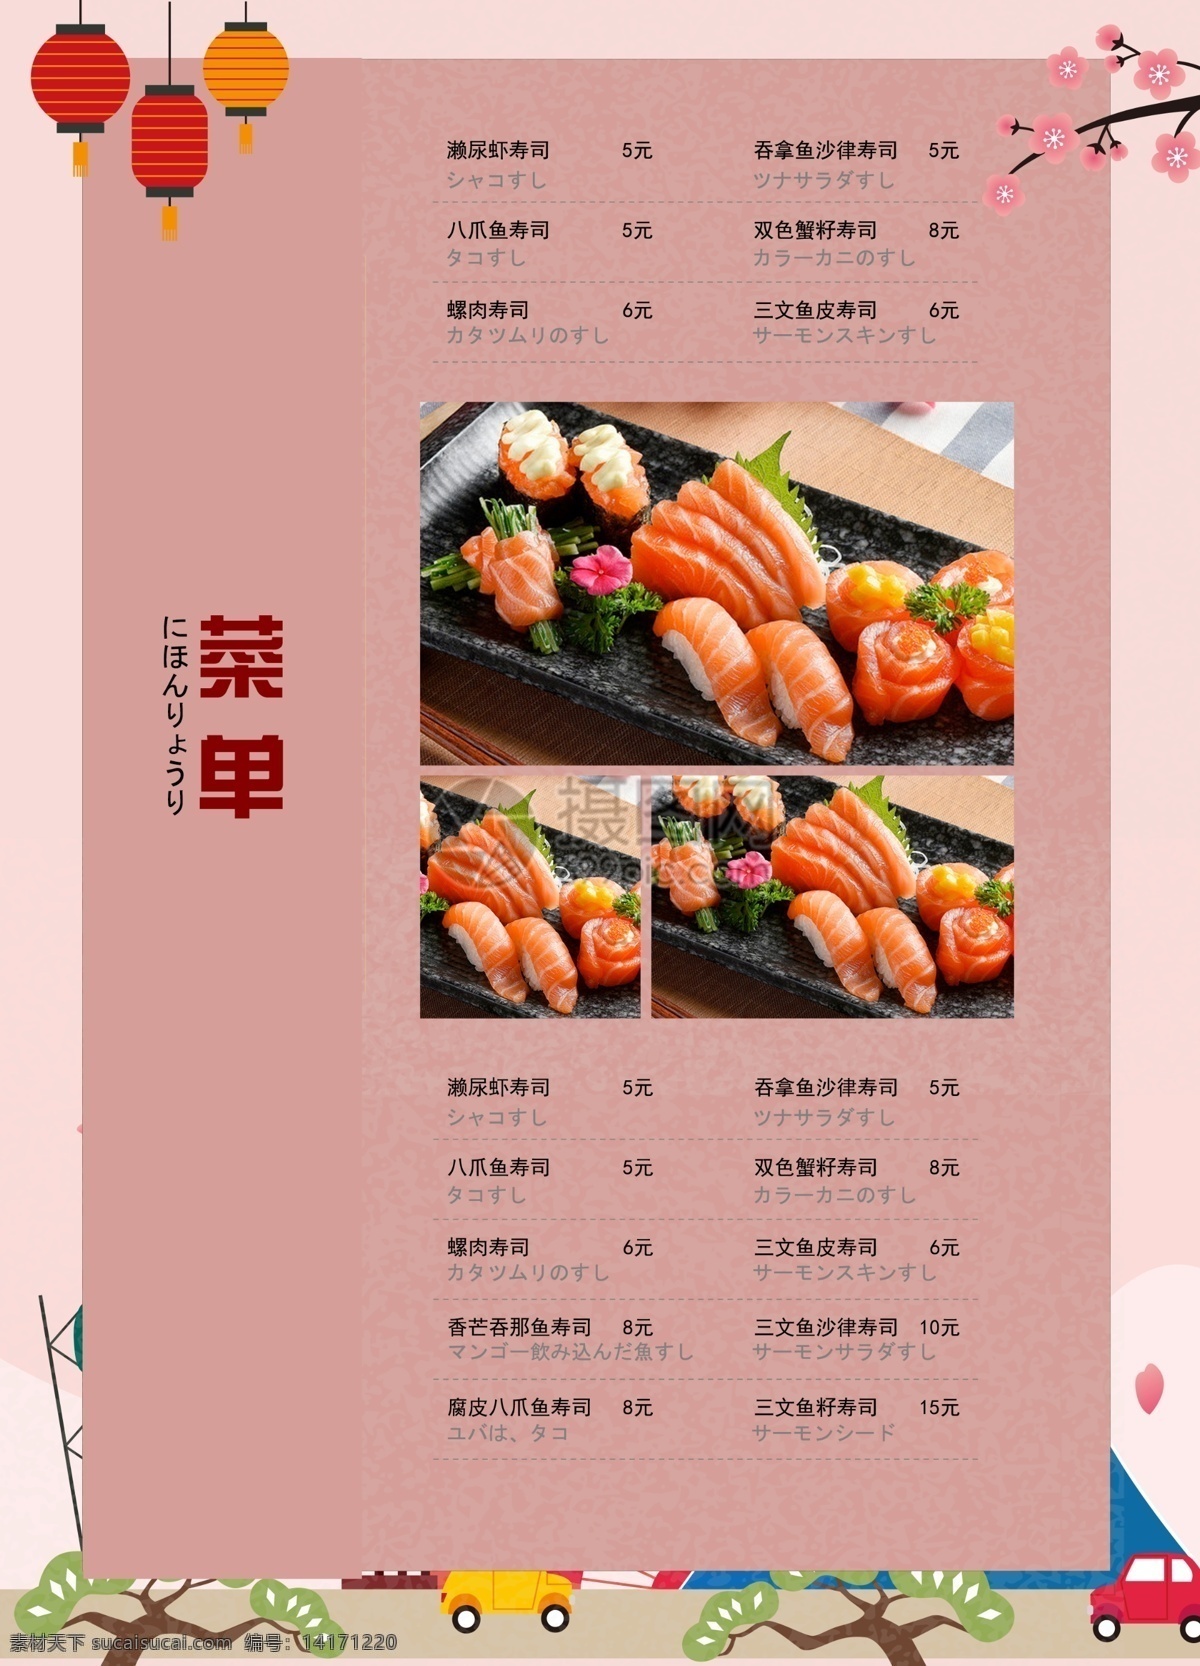 日式 餐厅 菜单 宣传单 日料 日式餐饮 单页 传单 餐饮菜单 餐饮传单 美食传单 日式餐厅菜单 寿司